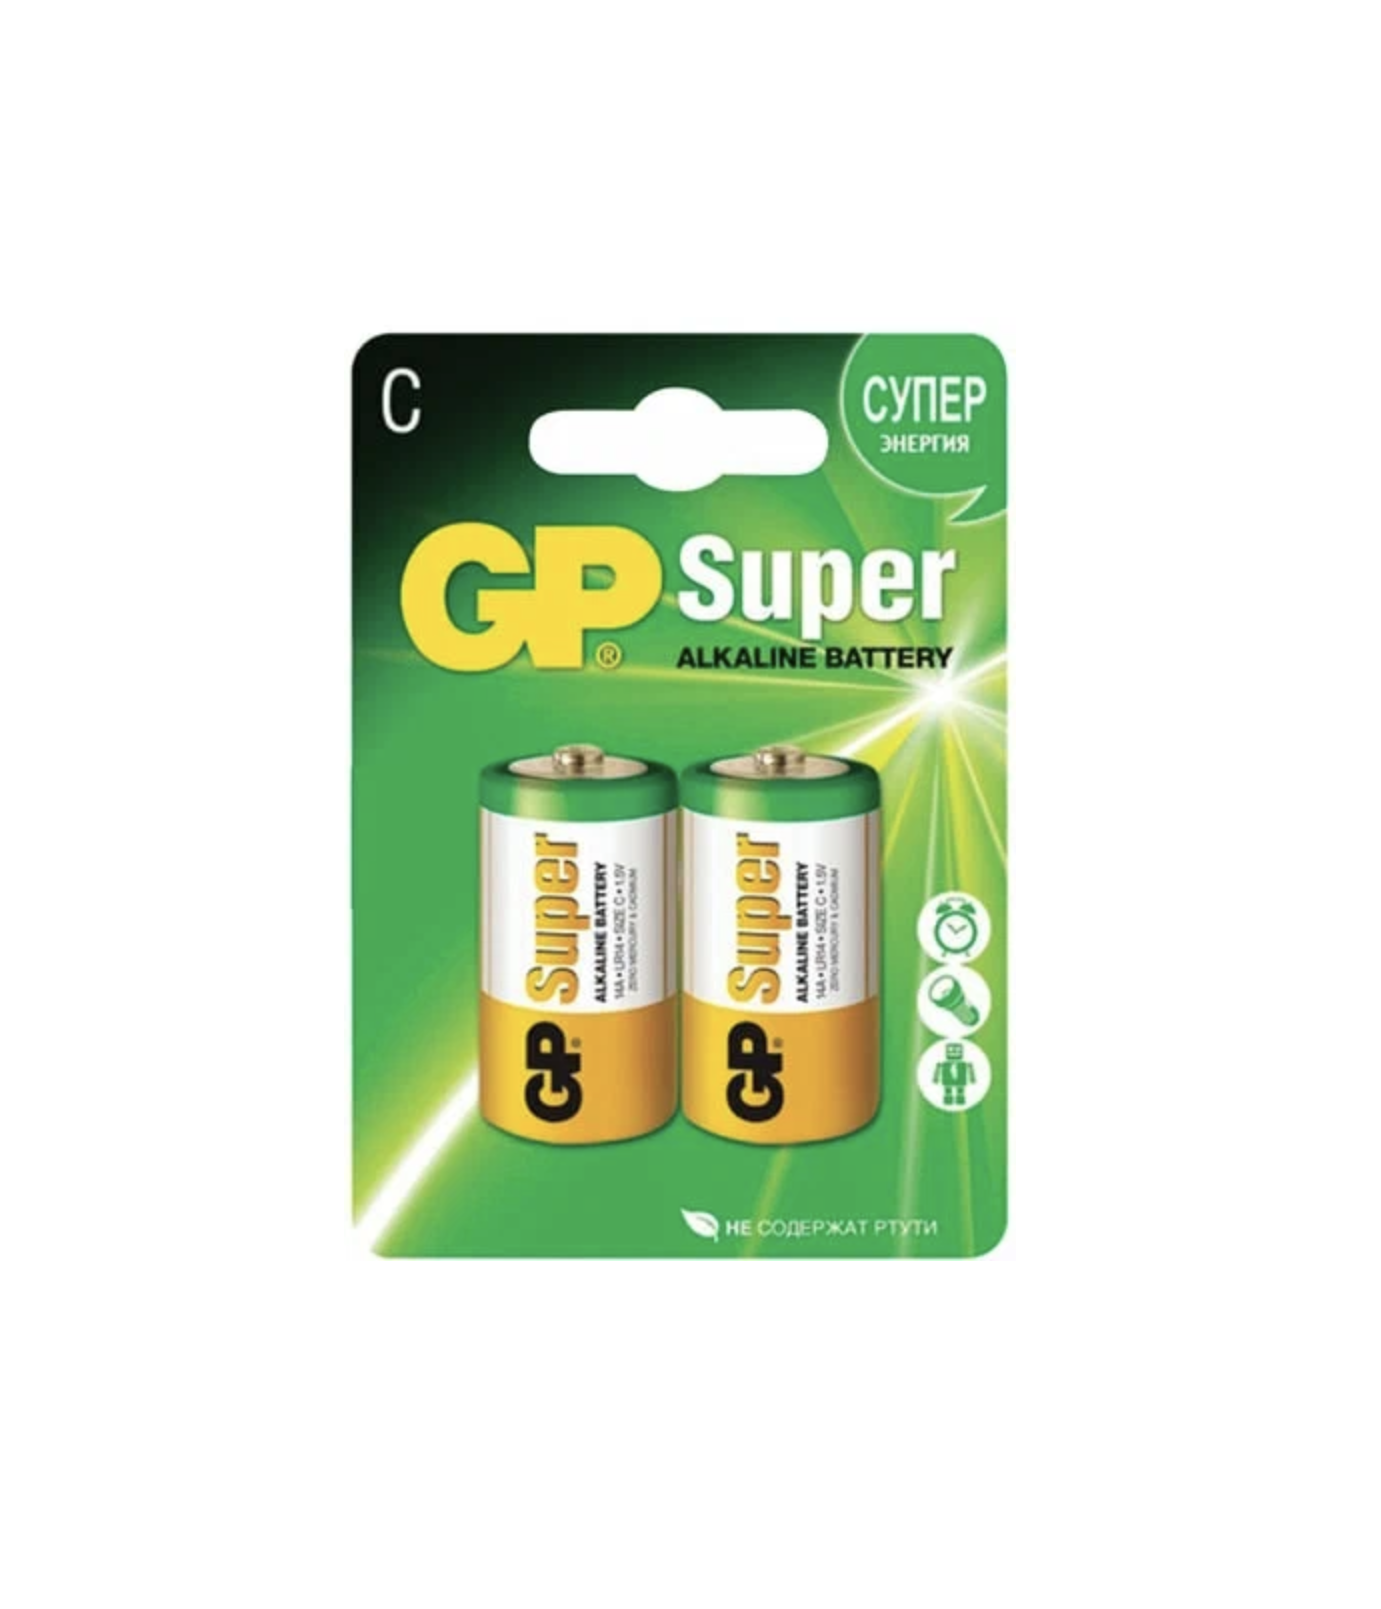  GP -  Super Alkaline Battery C LR14 14A 1.5V 2 